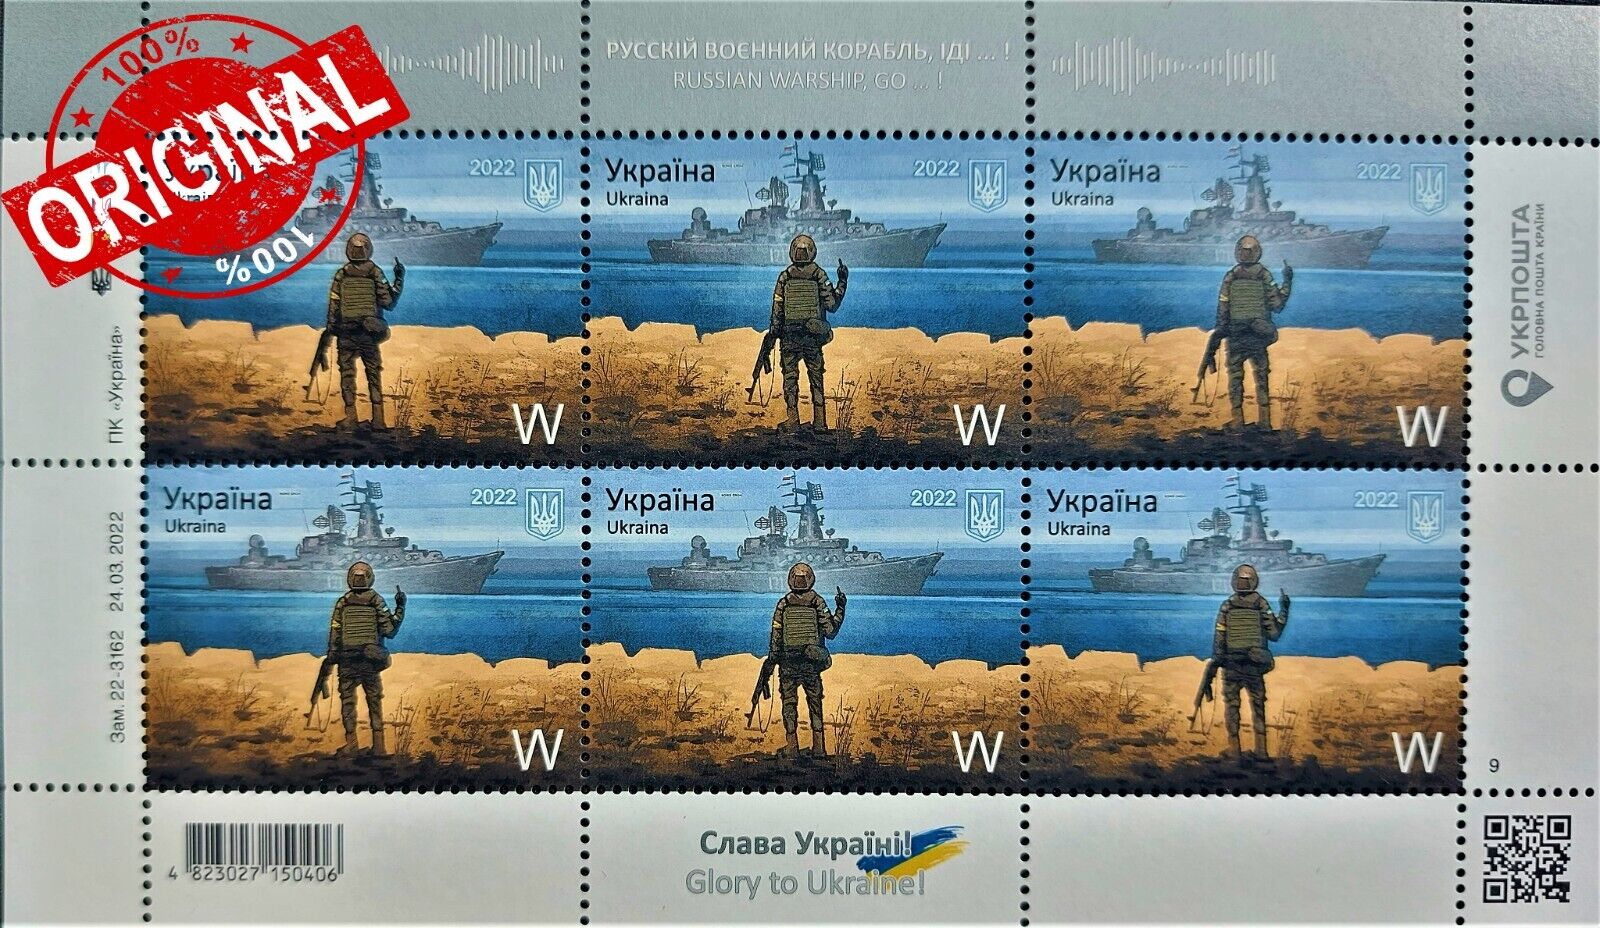 ORIGINAL.BEST BRAND. Full set "Russian warship go to ...!" War in Ukraine. Без бренда - фотография #2